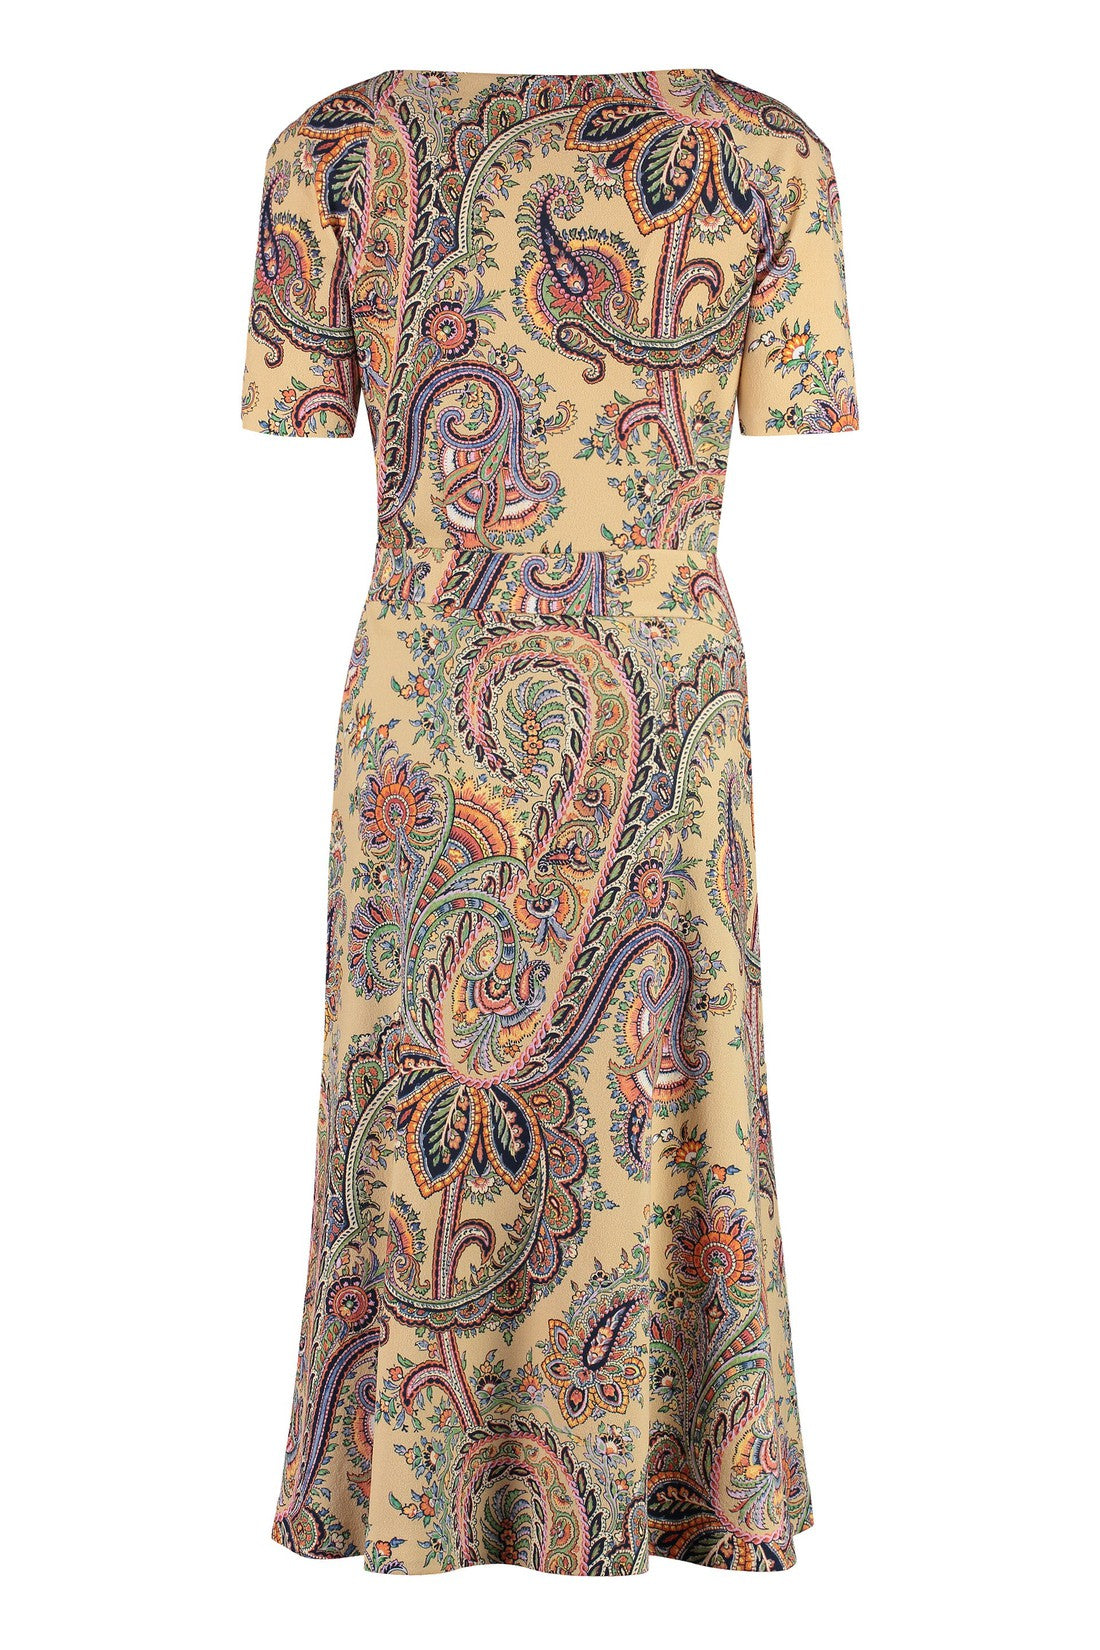 Etro-OUTLET-SALE-Paisley print dress-ARCHIVIST